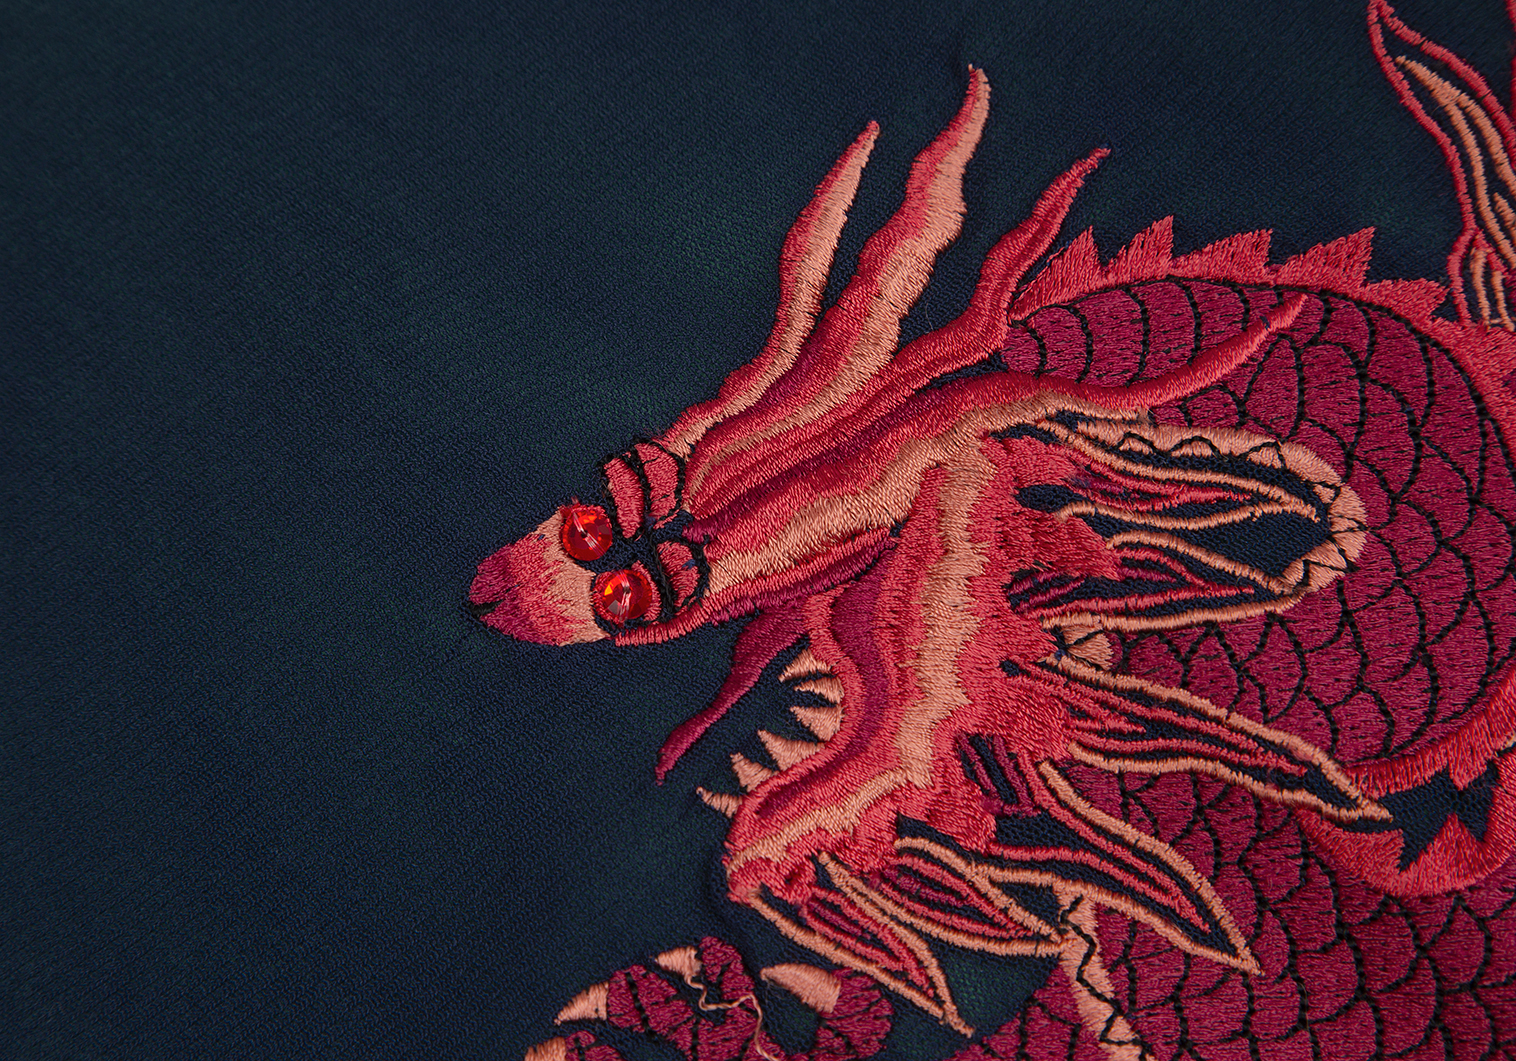 ヴィヴィアンタム カットソー ノースリーブ ドラゴン刺繍 日本製 XS 黒 赤